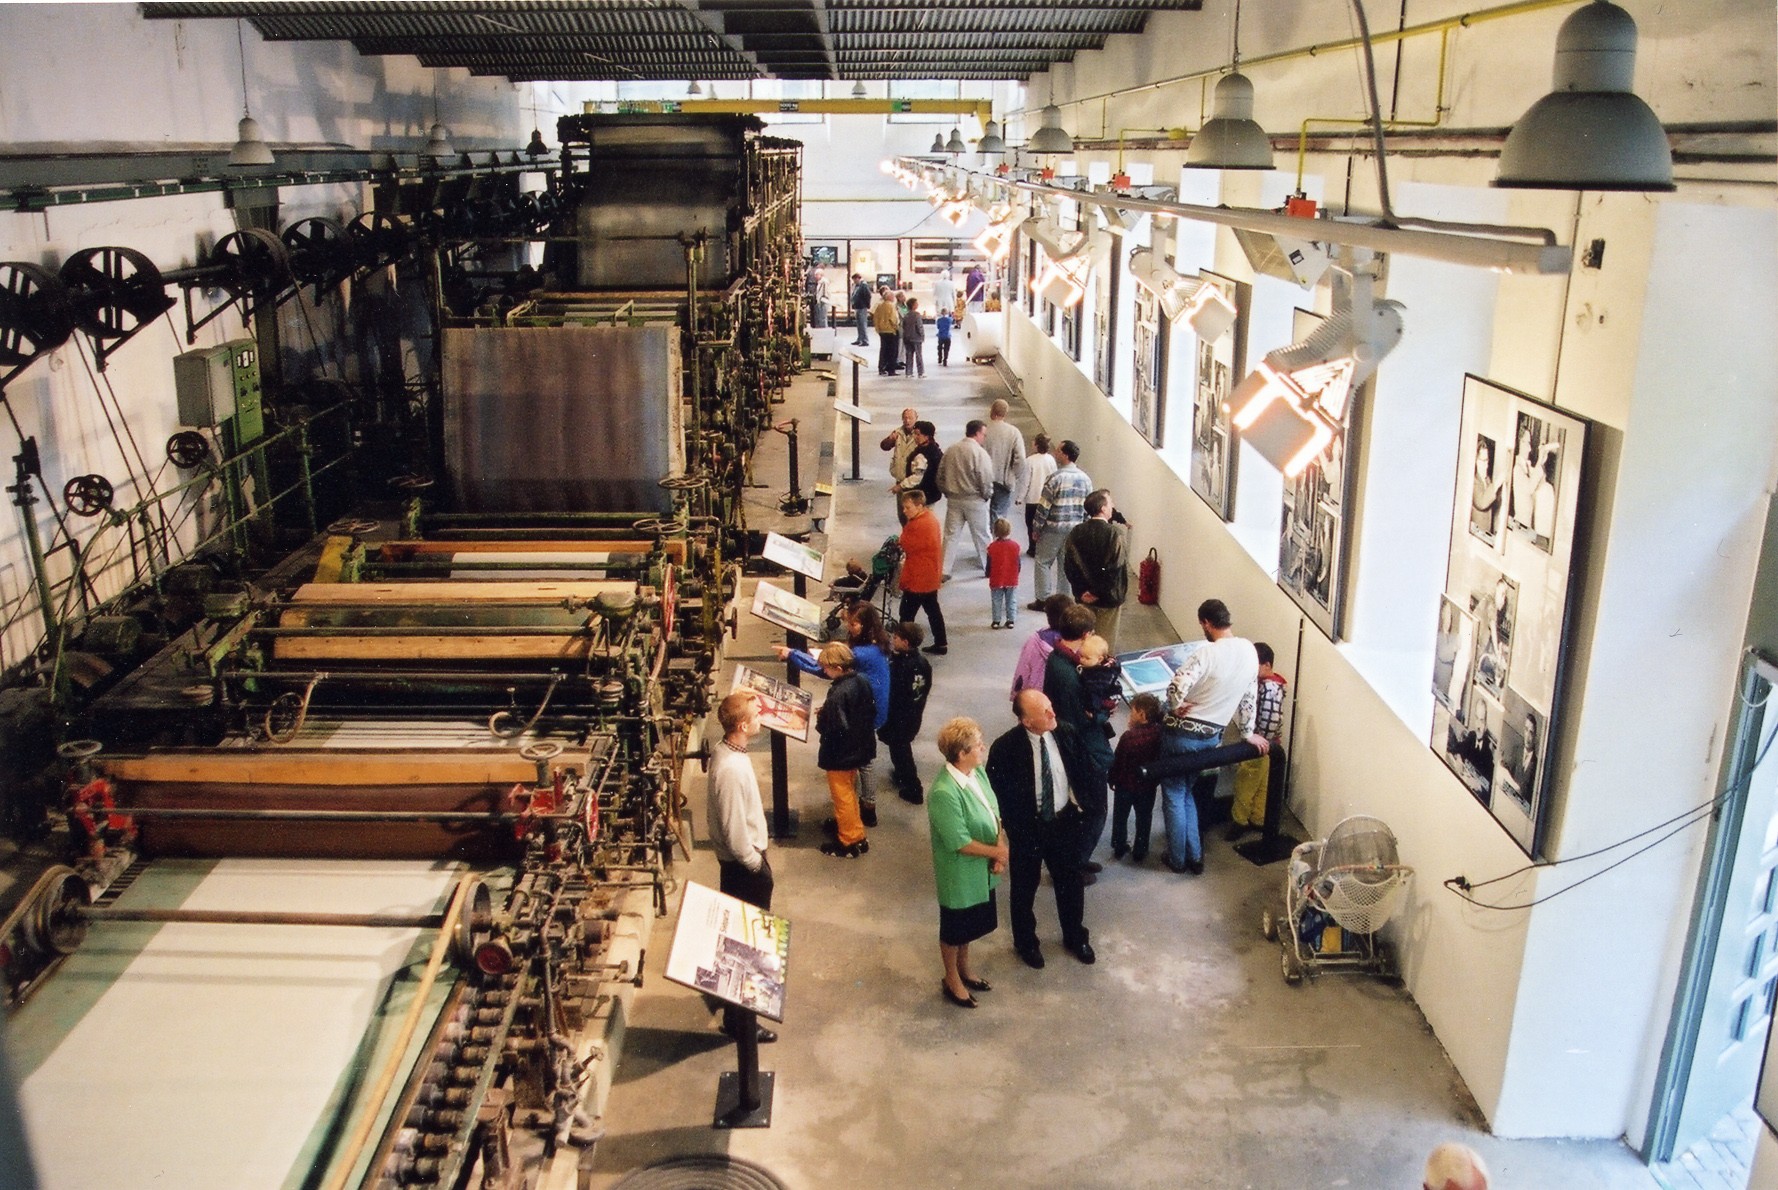 Eine riesige Papiermaschine aus dem Jahr 1889, eine Pappenmaschine oder ein Holzschleifer dokumentieren die industrielle Produktion um 1900.